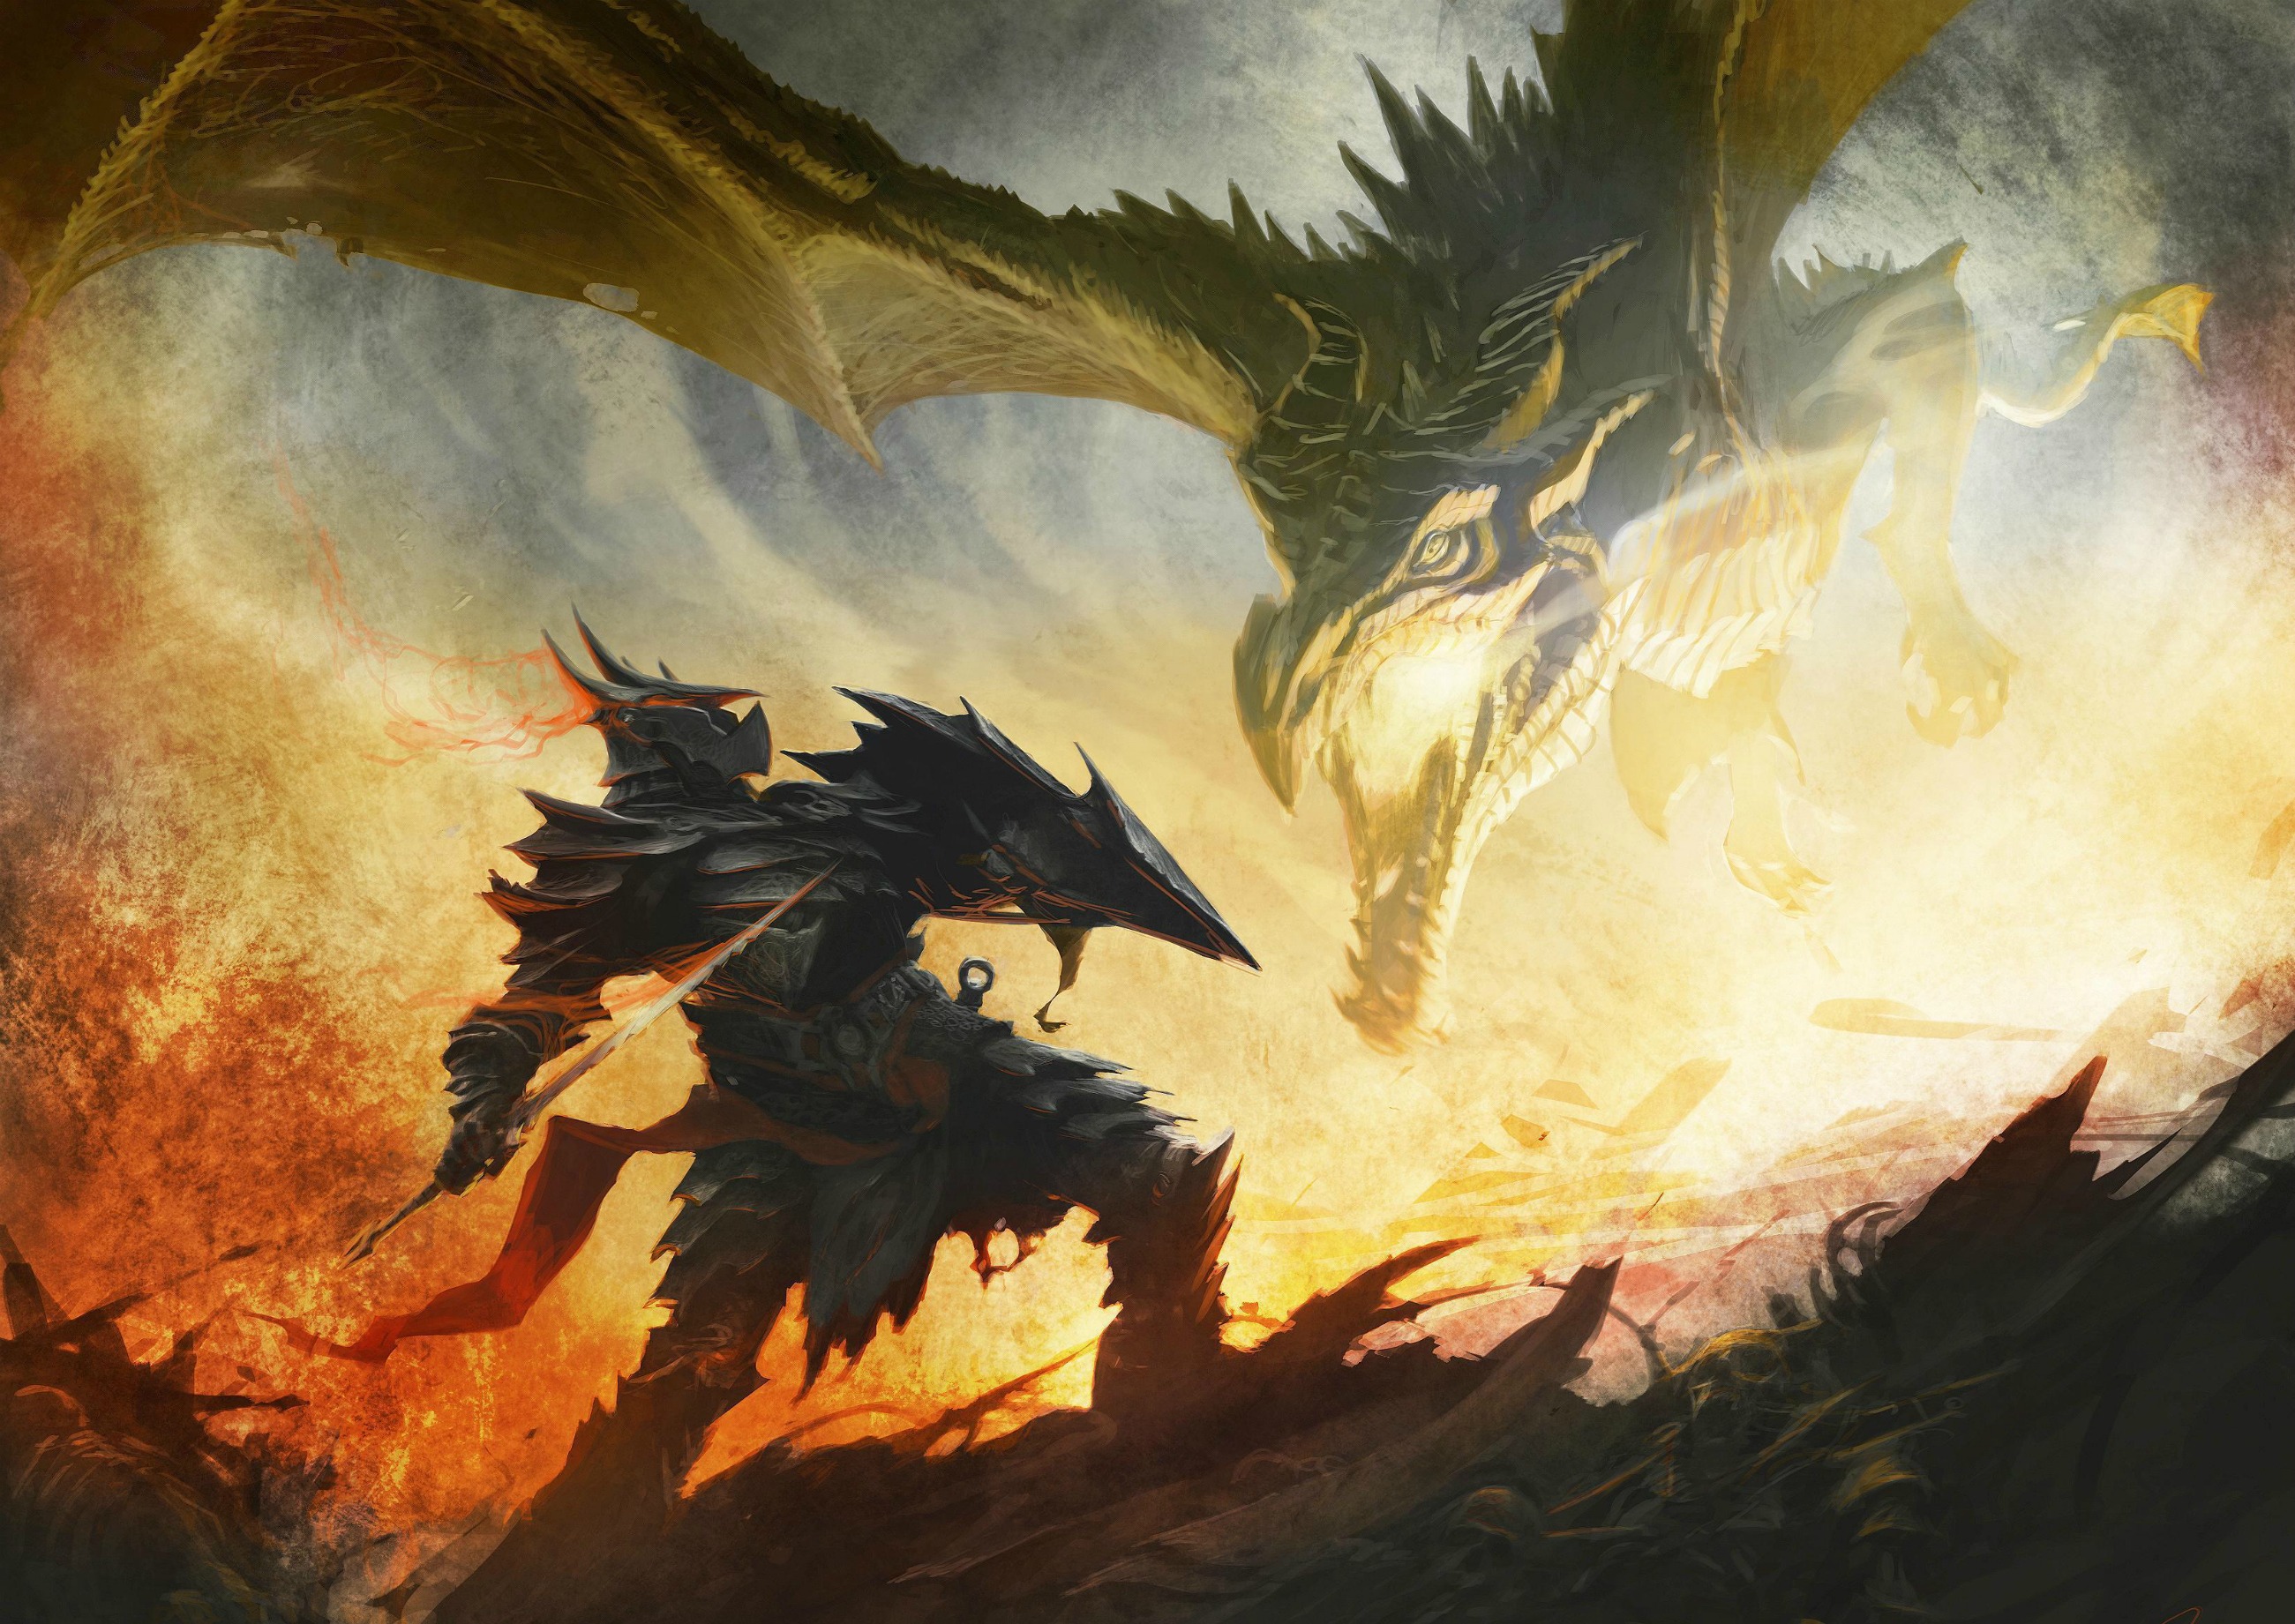 skyrim, video game, the elder scrolls v: skyrim, dragon, the elder scrolls wallpaper for mobile